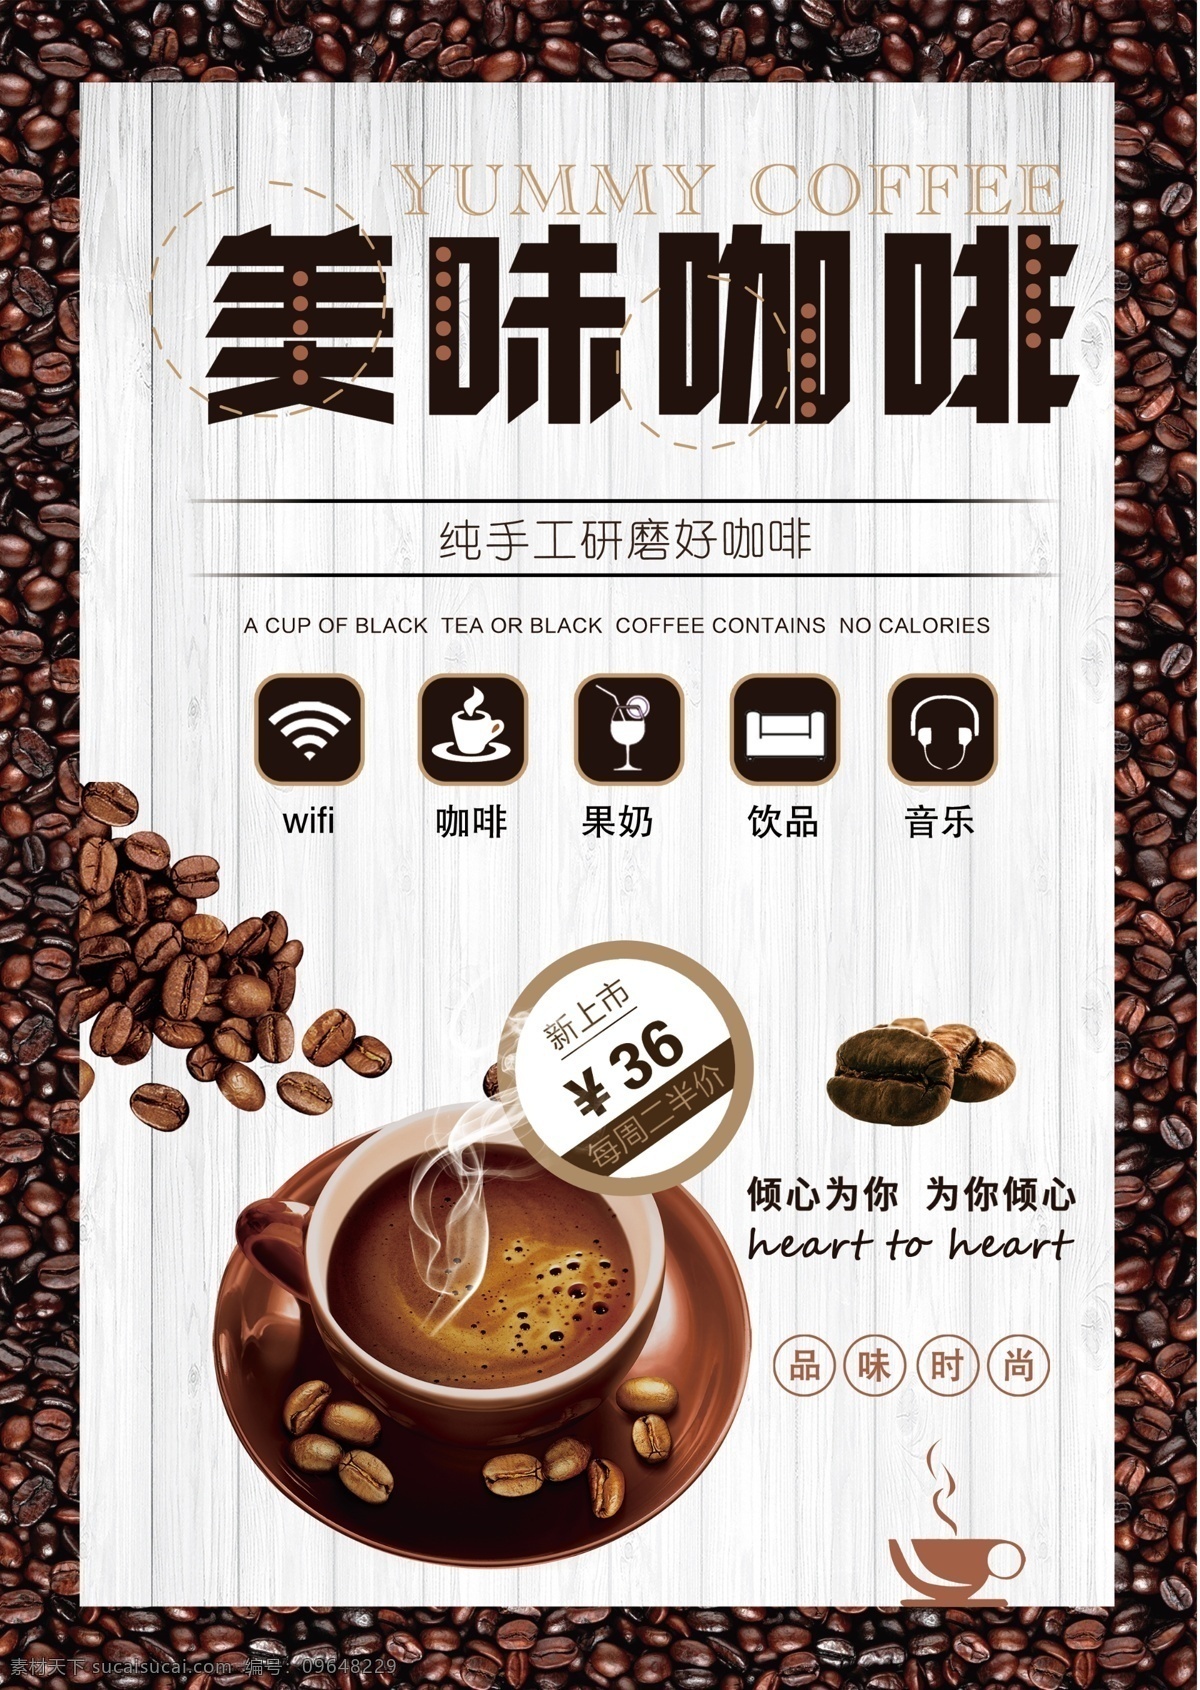 美味 咖啡 宣传单 美味咖啡 咖啡促销 促销宣传单 促销 传单 传单设计 宣传单设计 咖啡厅 咖啡厅宣传单